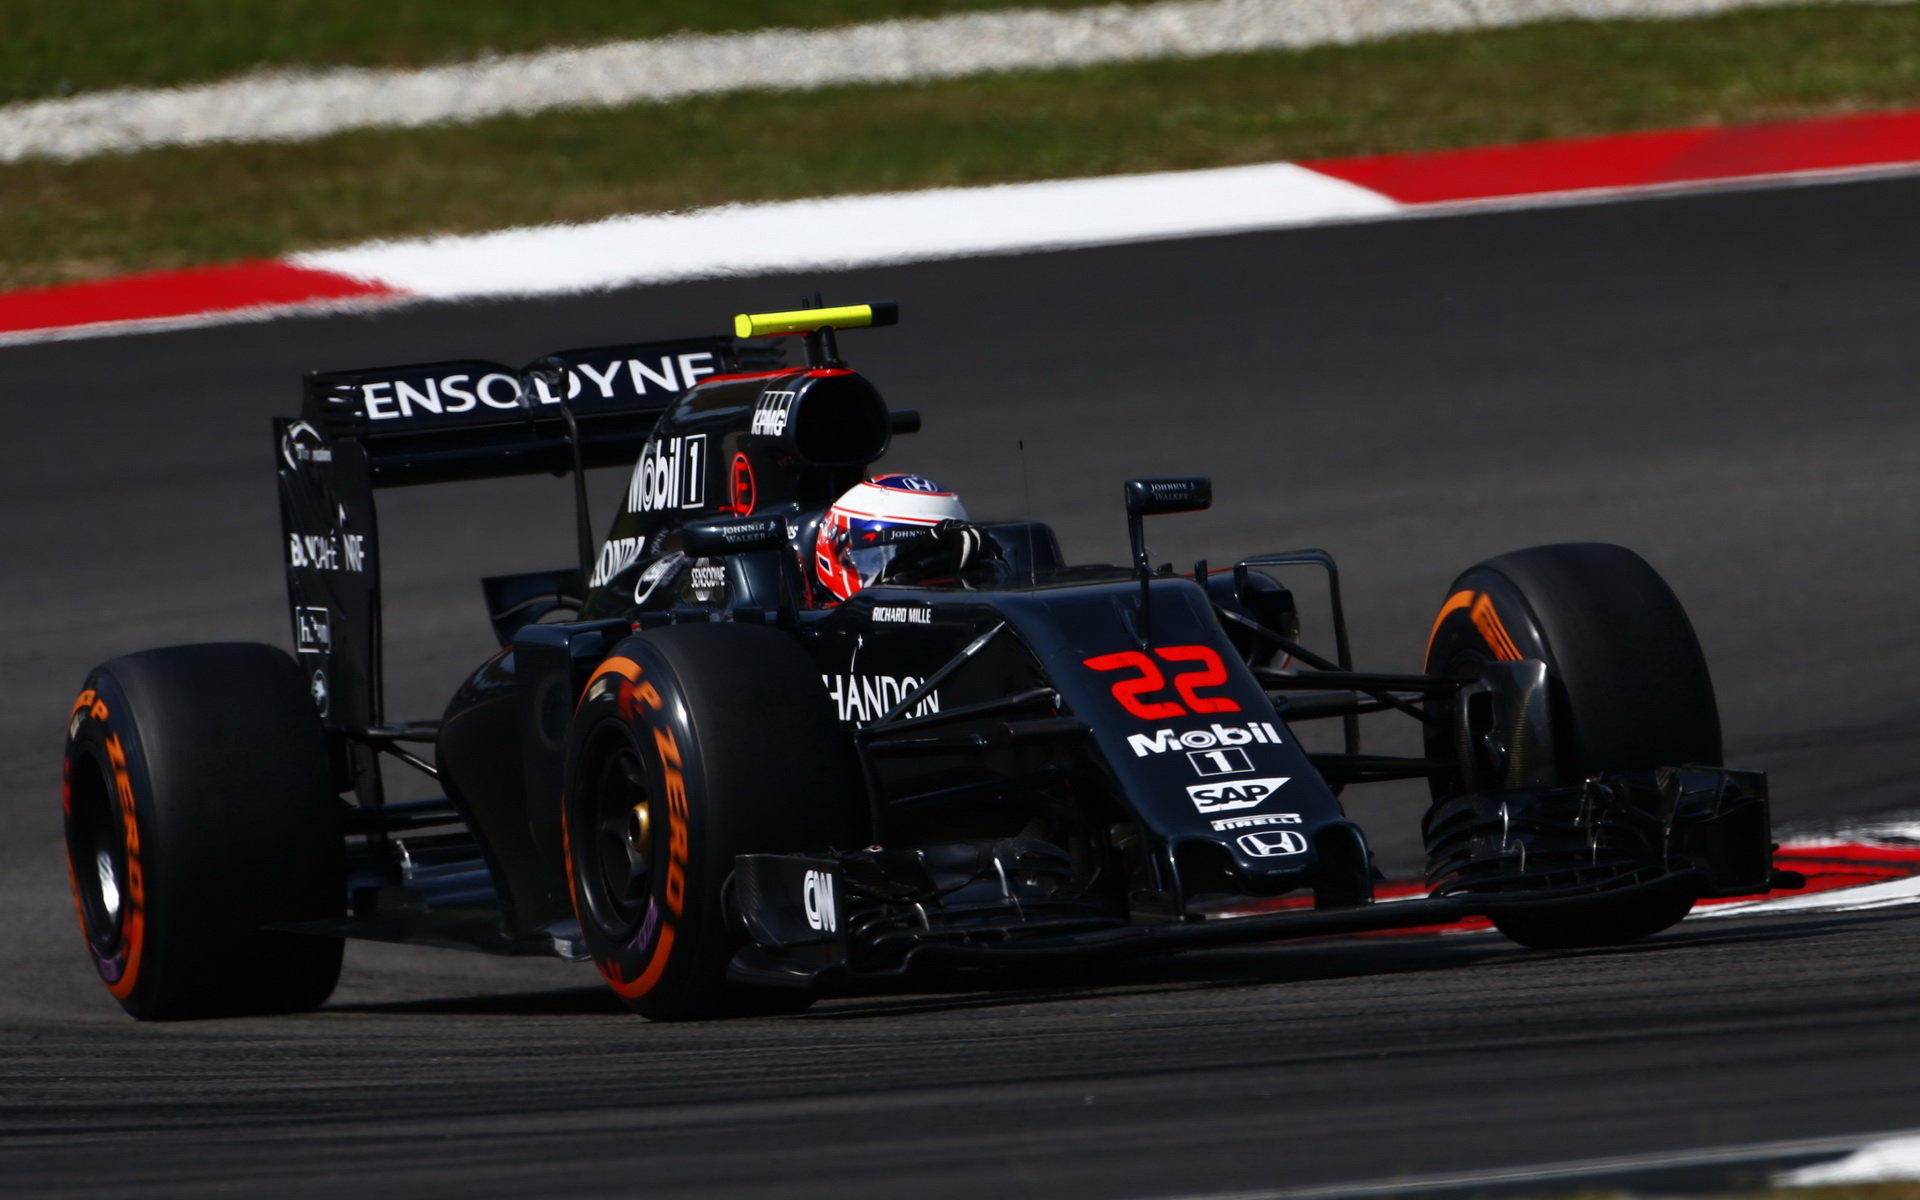 Tým McLaren před Japonskem necítí zvýšený tlak